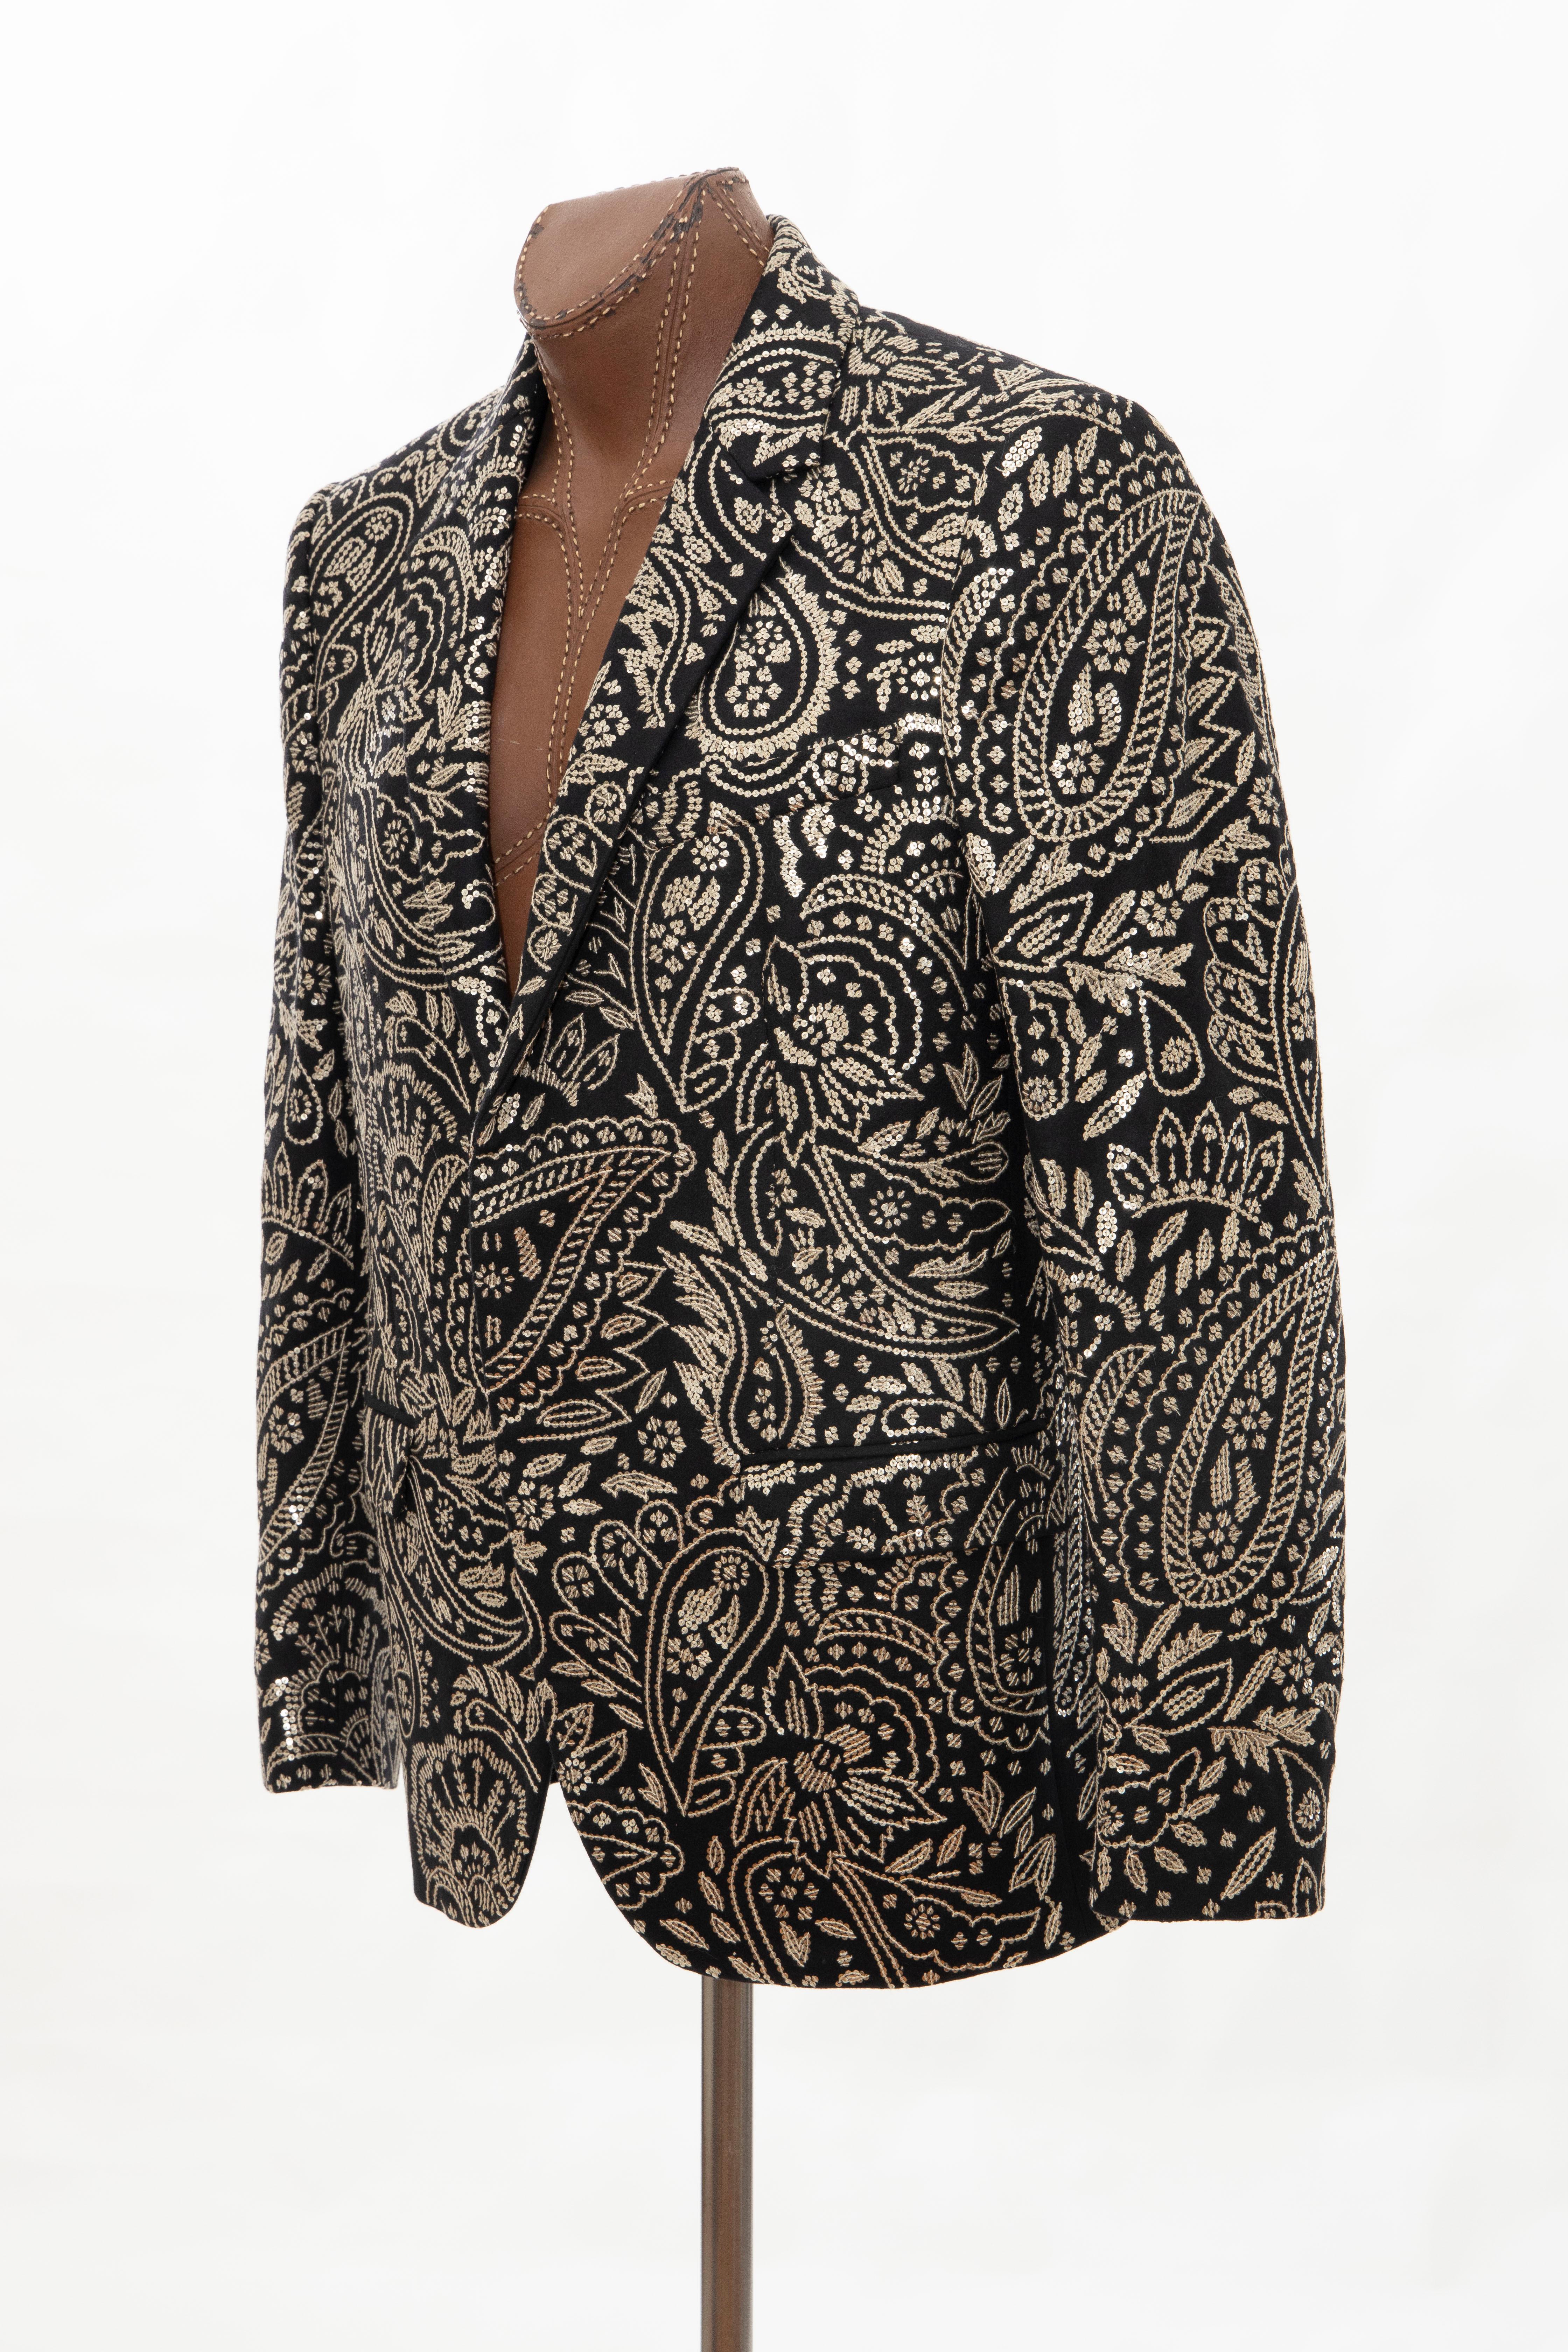 Alexander McQueen Men's Runway Black Wool Embroidered Sequin Blazer, Fall 2016 5